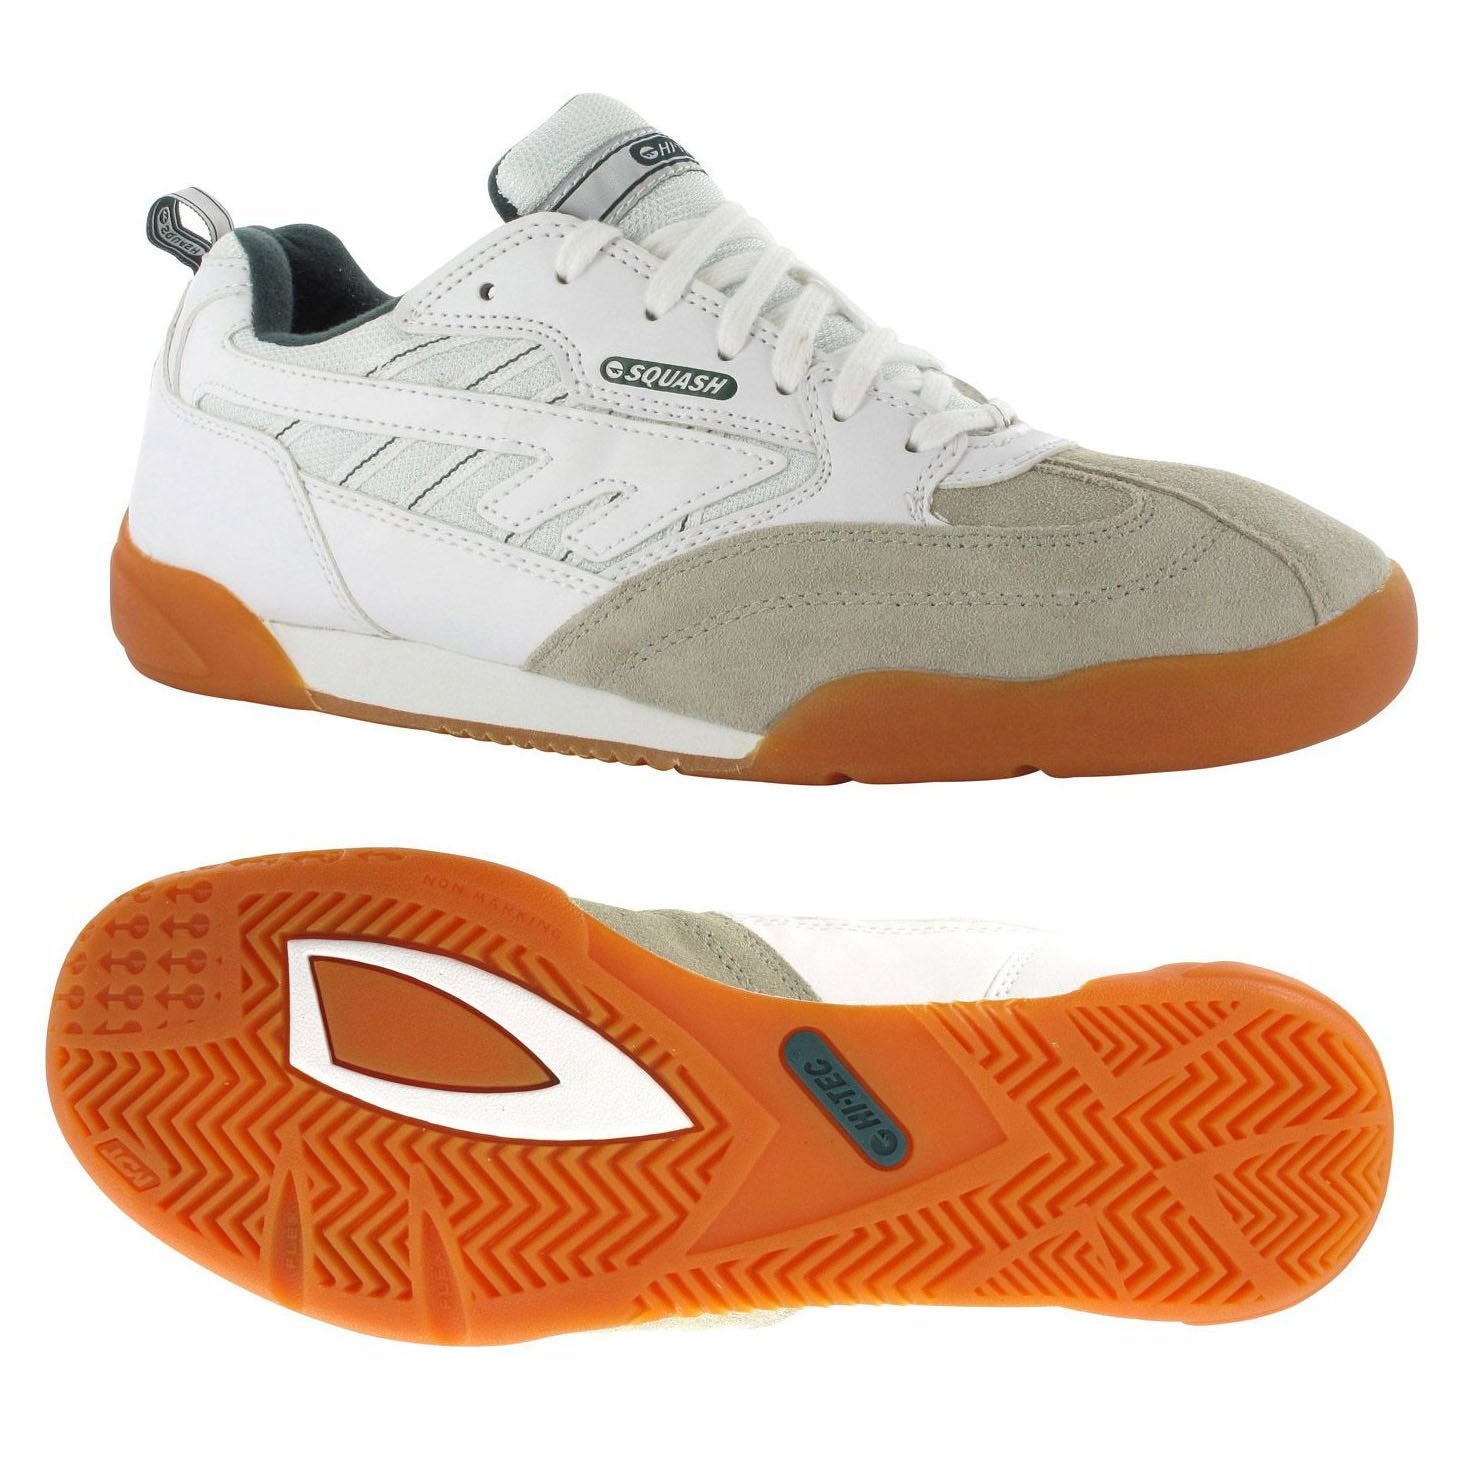 Hi-Tec Squash Classic Shoes